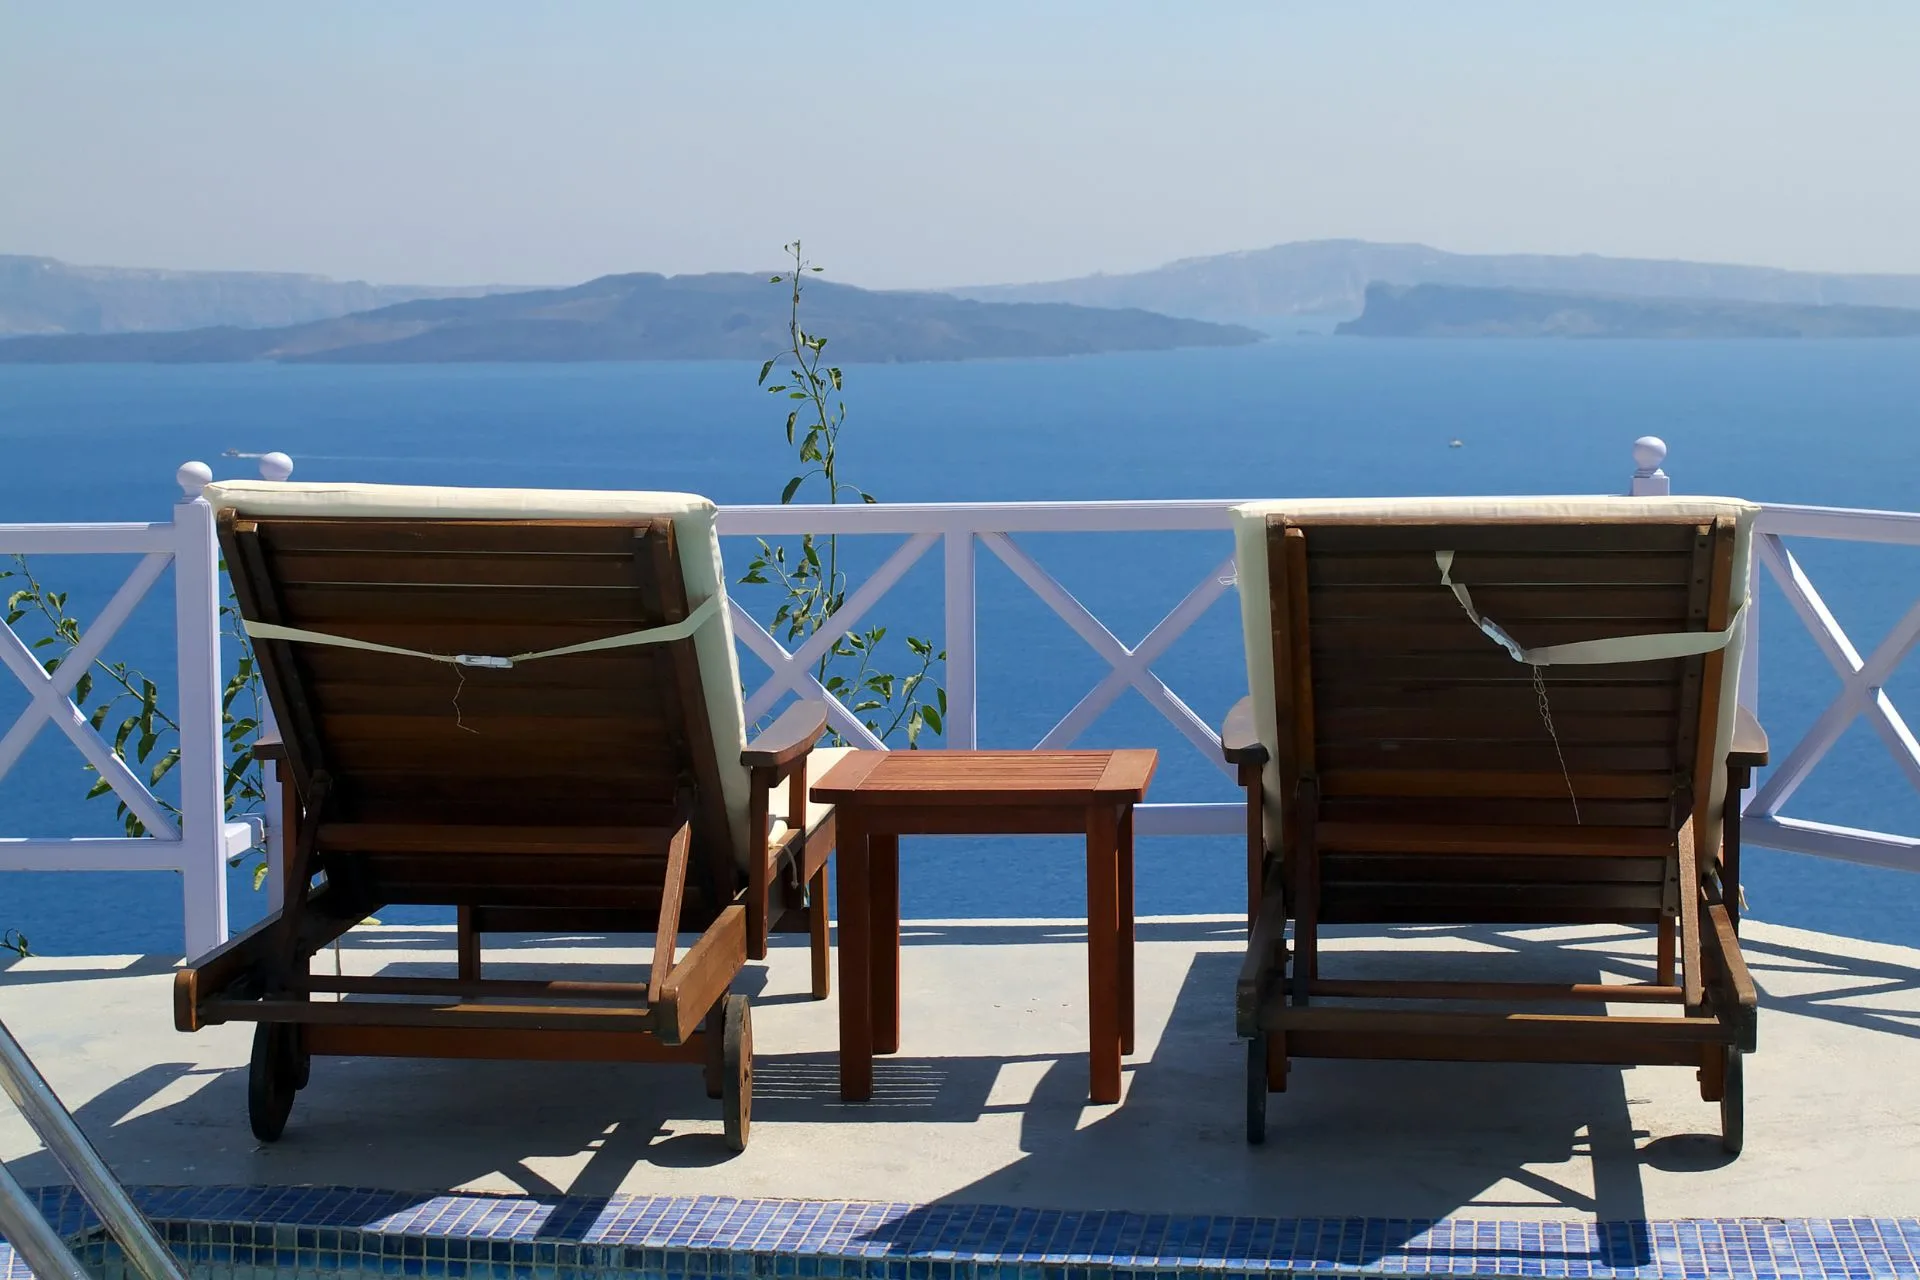 Βρες τις καλύτερες προσφορές για ξενοδοχεία στην Ελλάδα